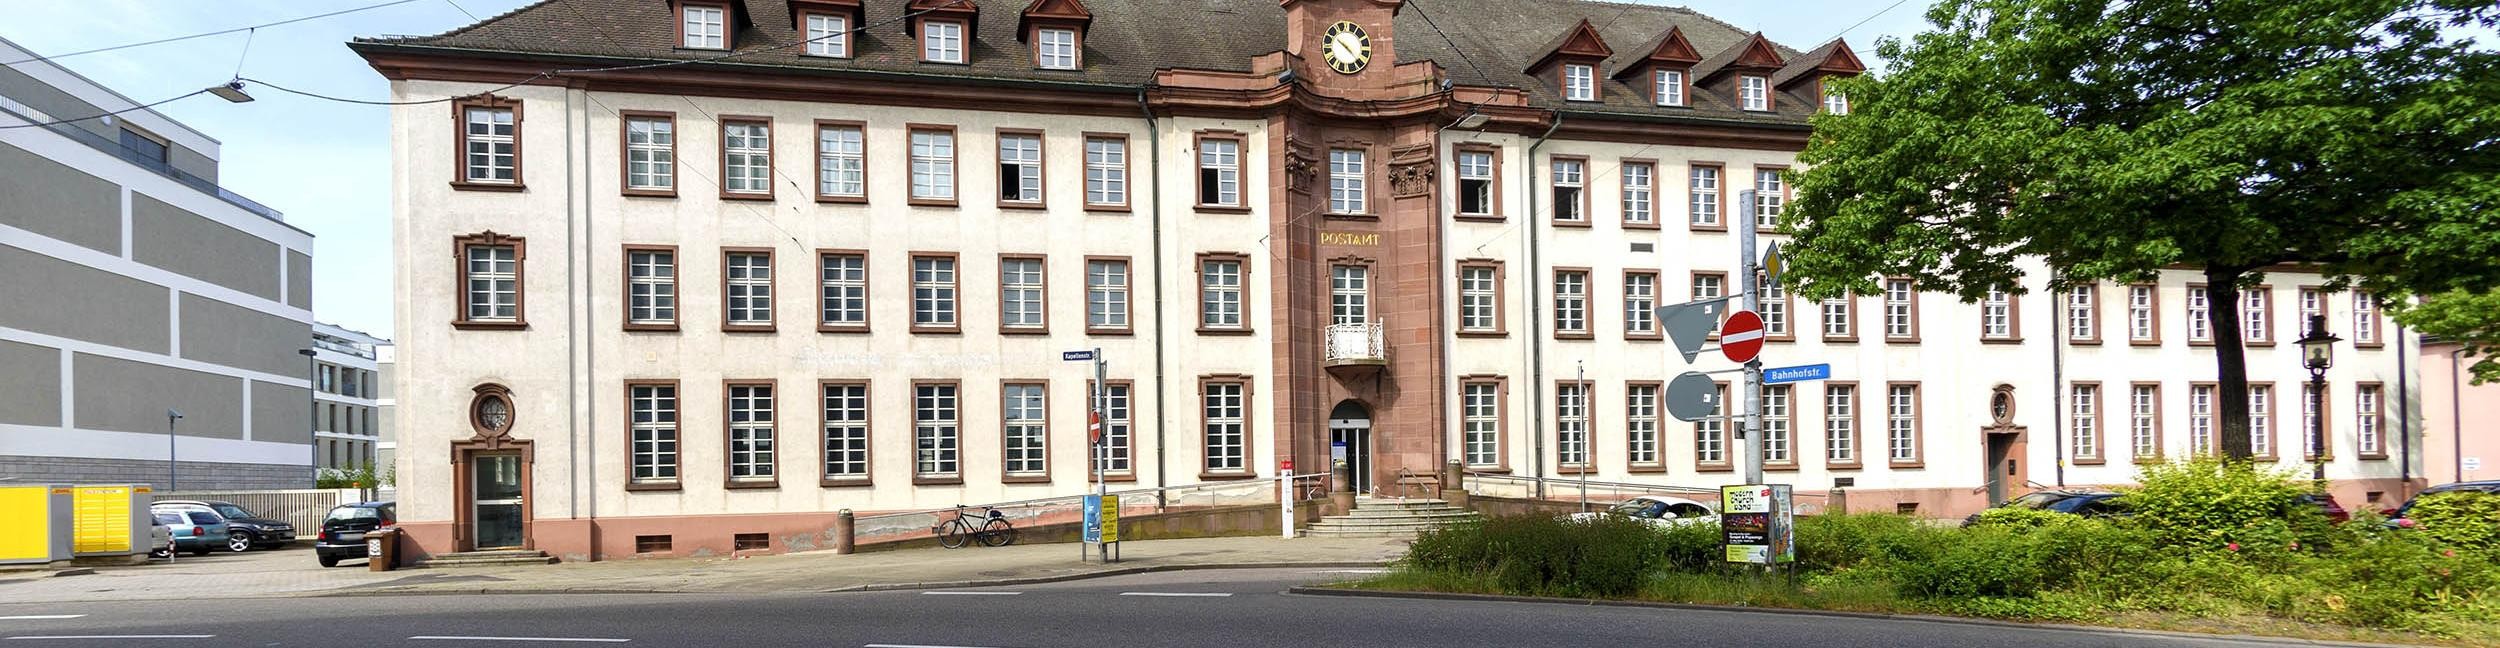 Altes Postamt in Rastatt